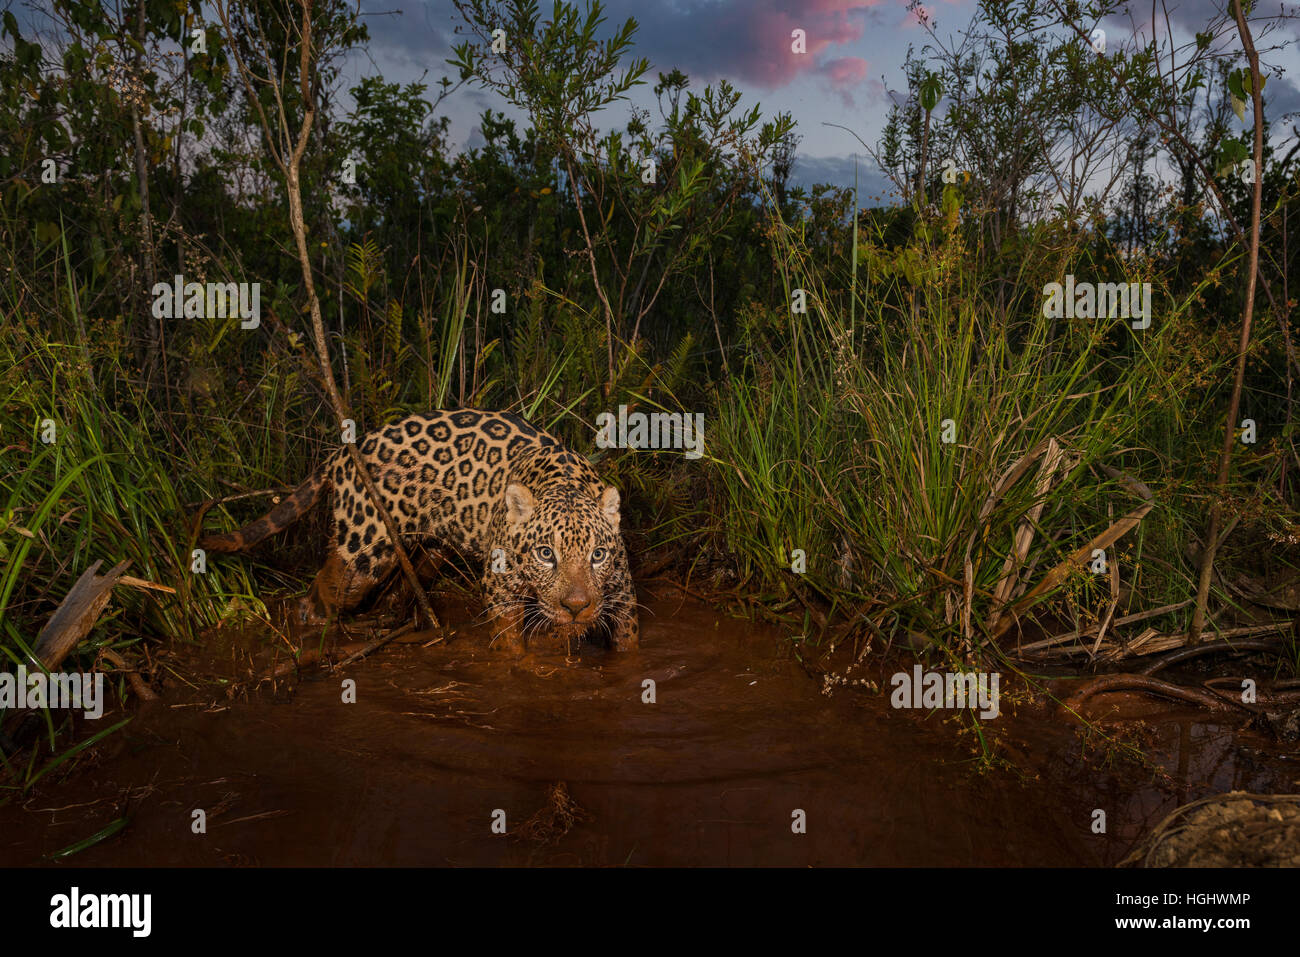 A Jaguar explores a wetland at sunset Stock Photo